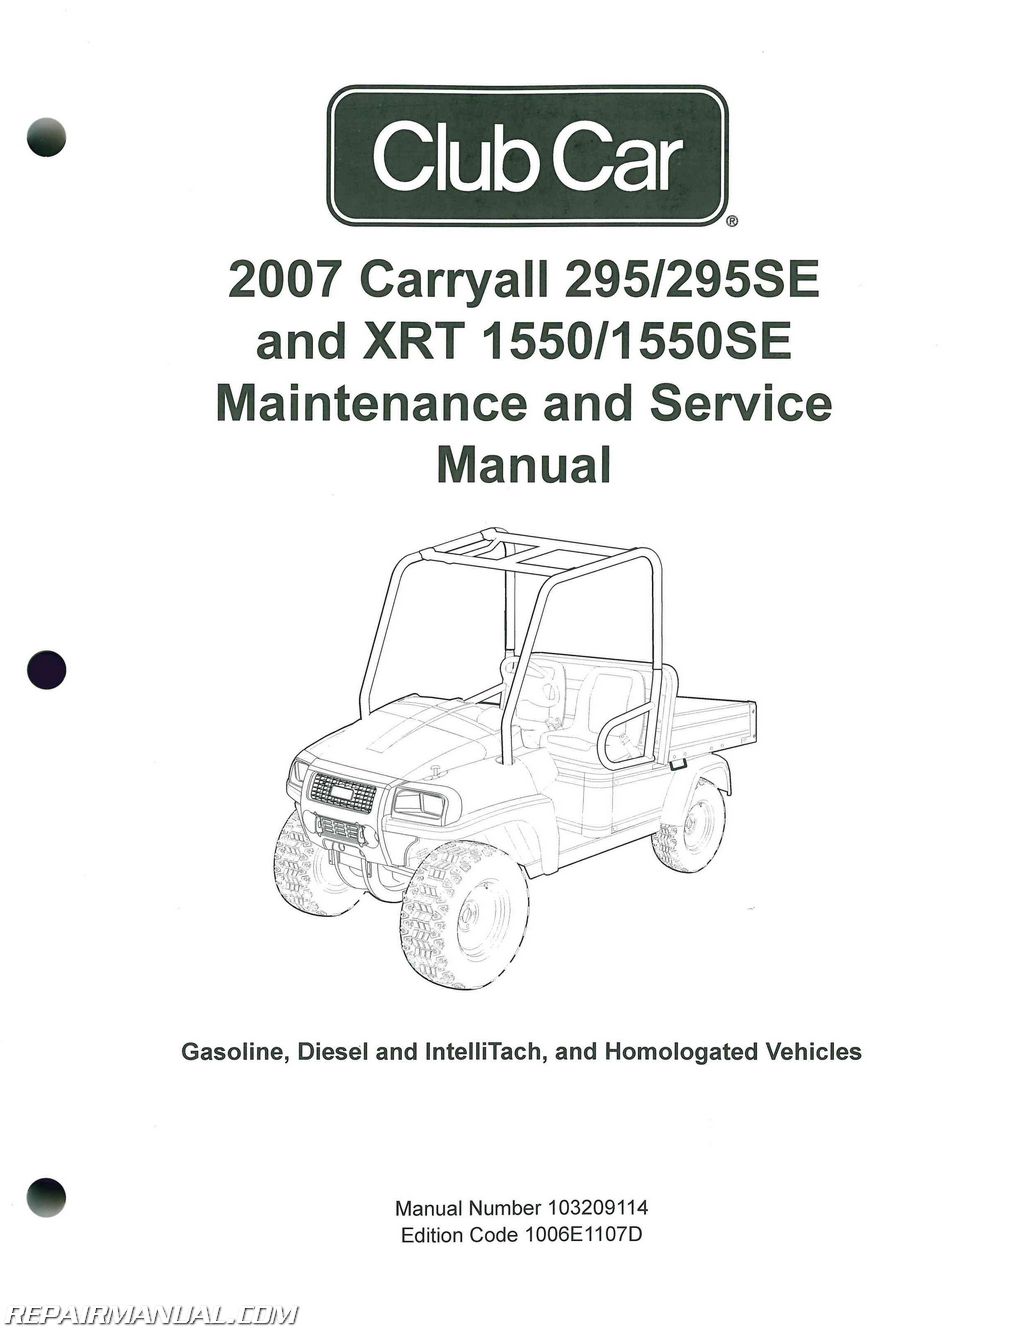 2007 Club Car Carryall Service Manual 295  295se  U2013 Xrt